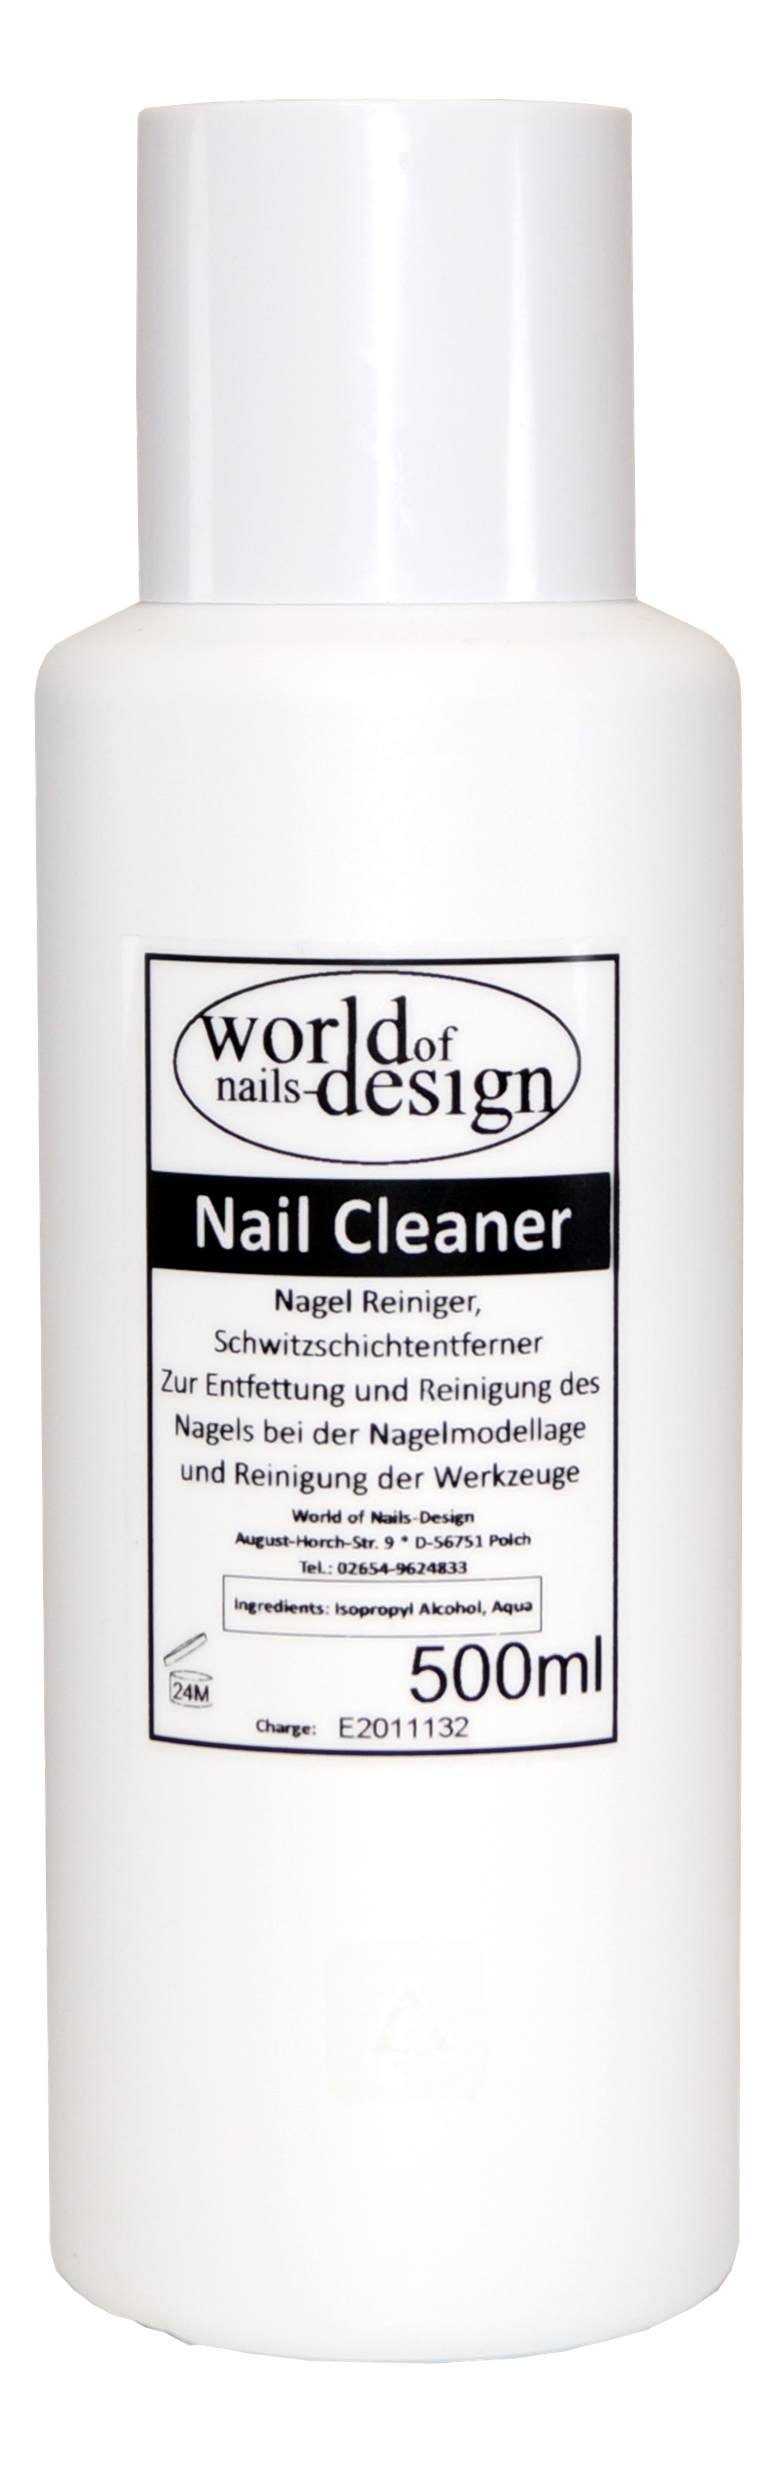 World Nail 500ml Nagelreiniger Für Cleaner Nagellackentferner Cleaner Gelnägel of Nails-Design